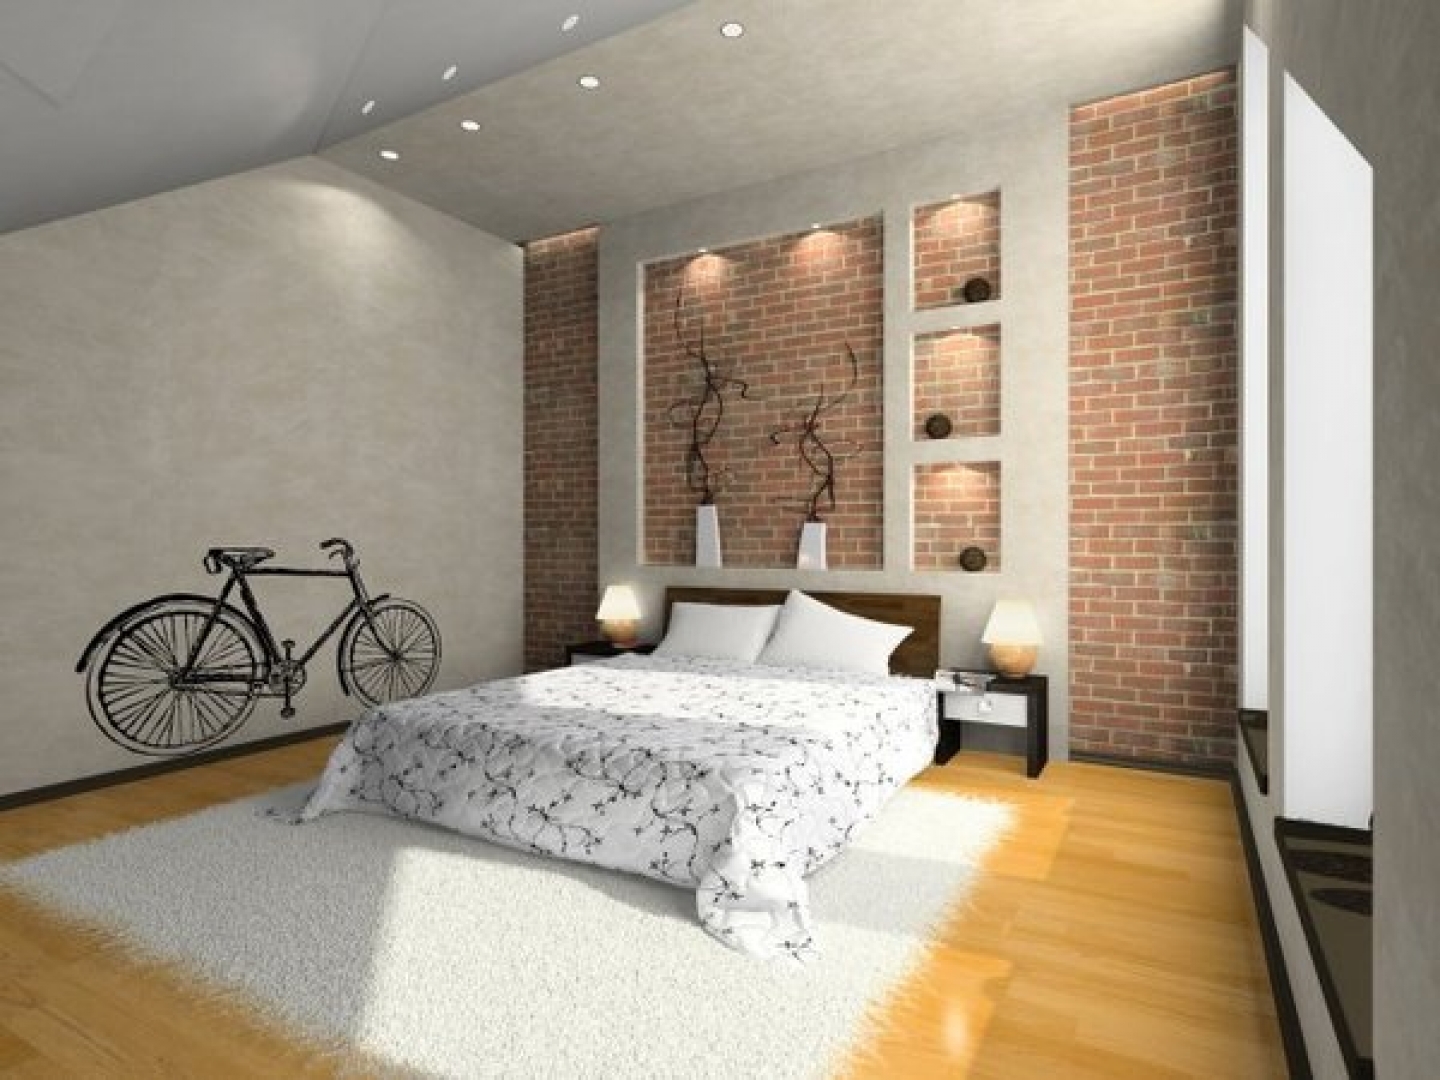 Free download bed bedroom bedroom ideas bedroom wallpaper designs